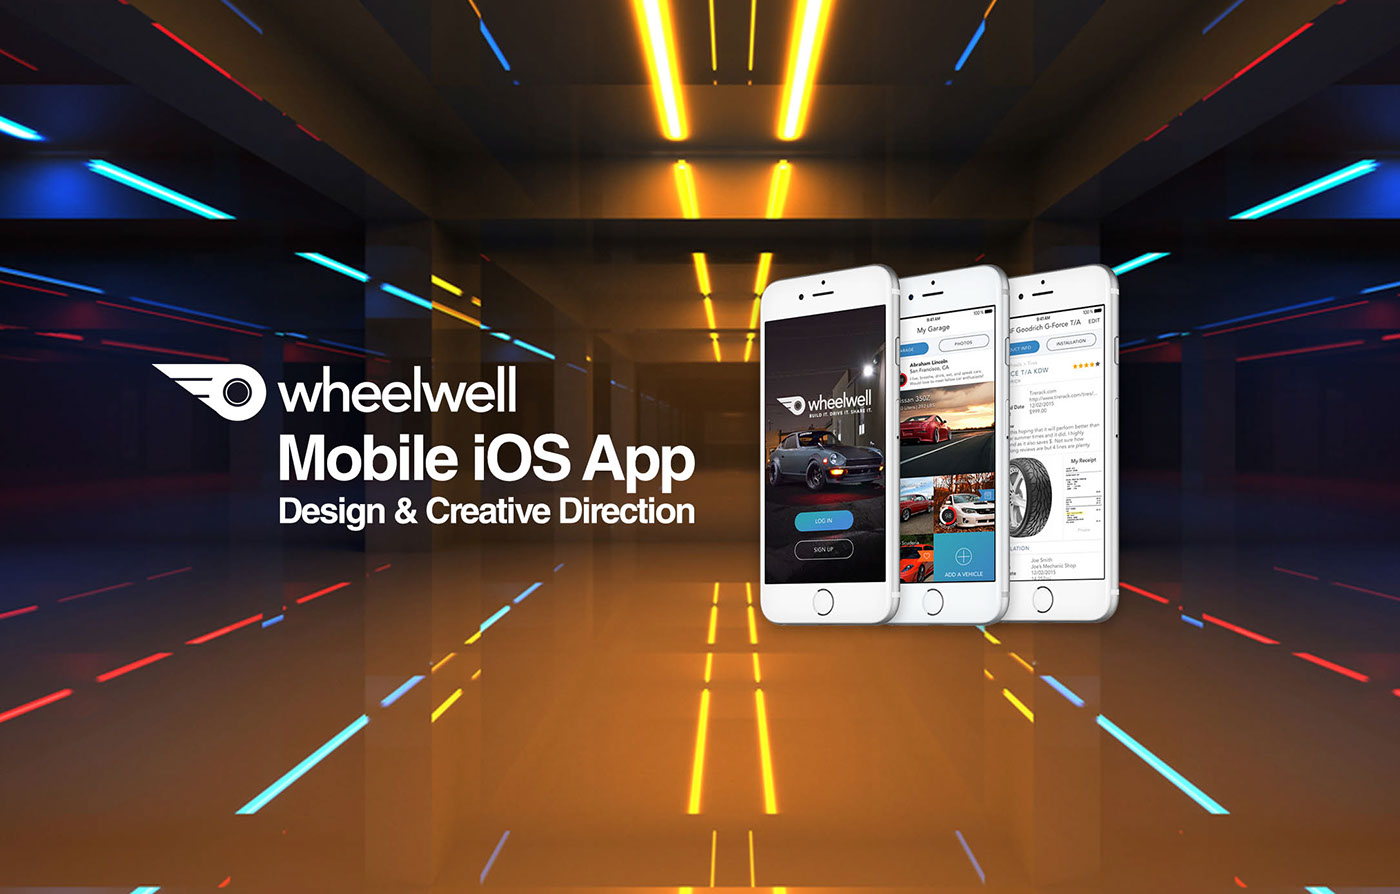 wheelwell AR augmented reality Mobile app ar app